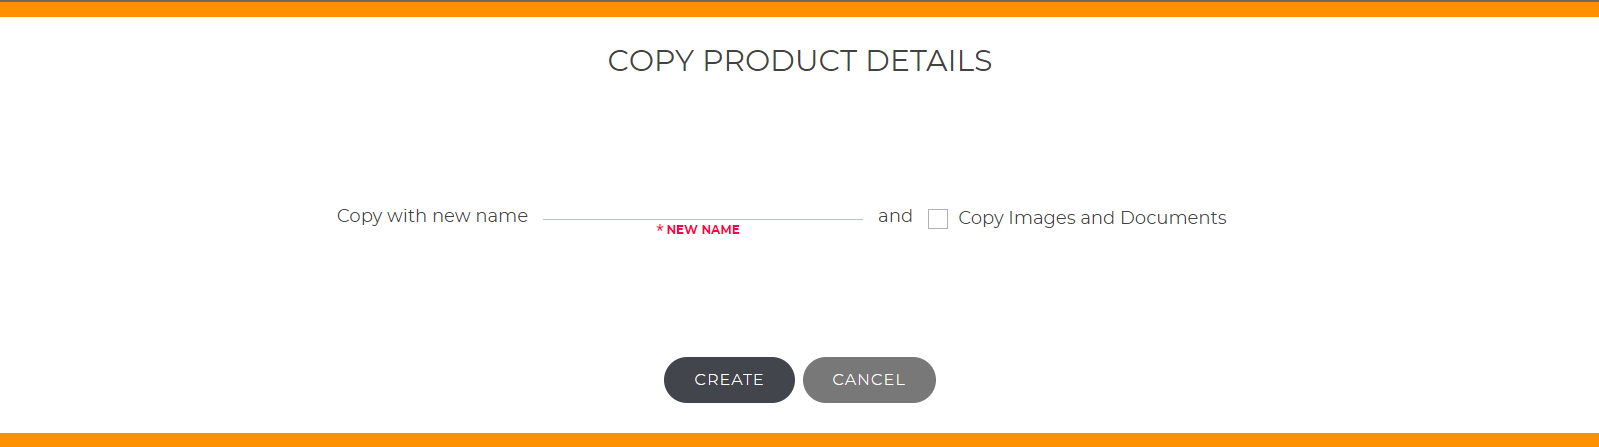 Copy product details.